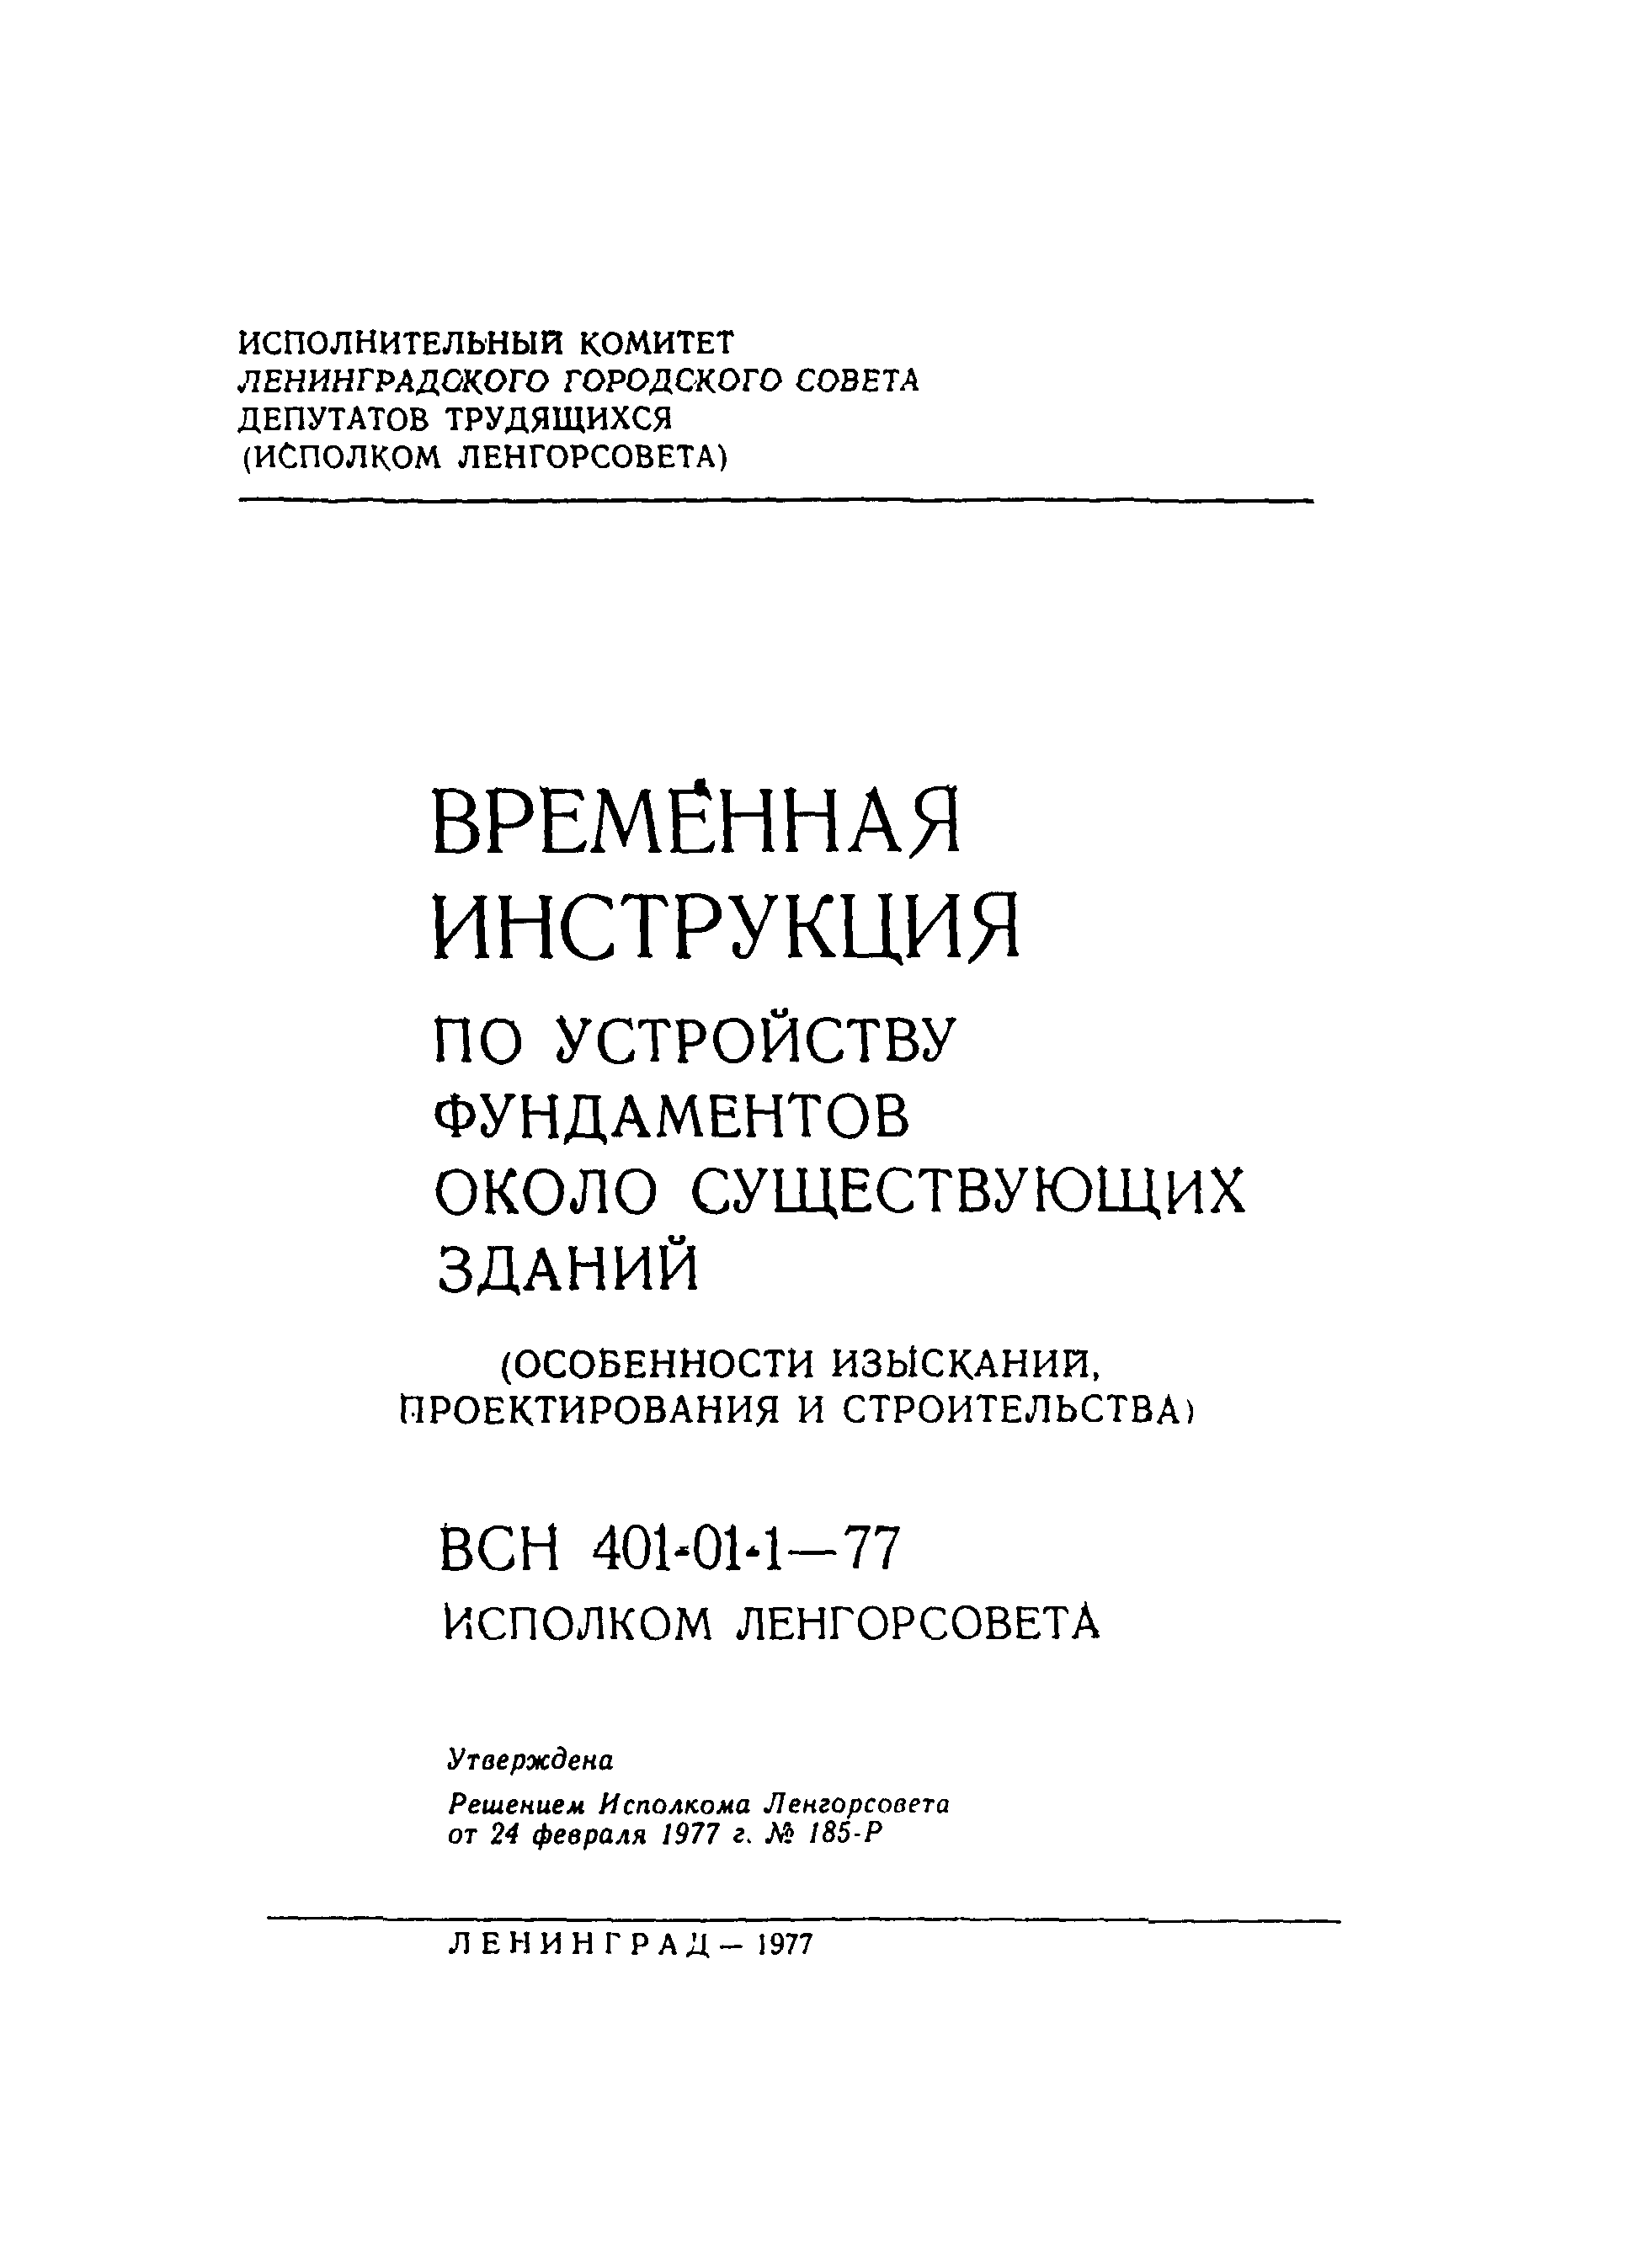 ВСН 401-01-1-77